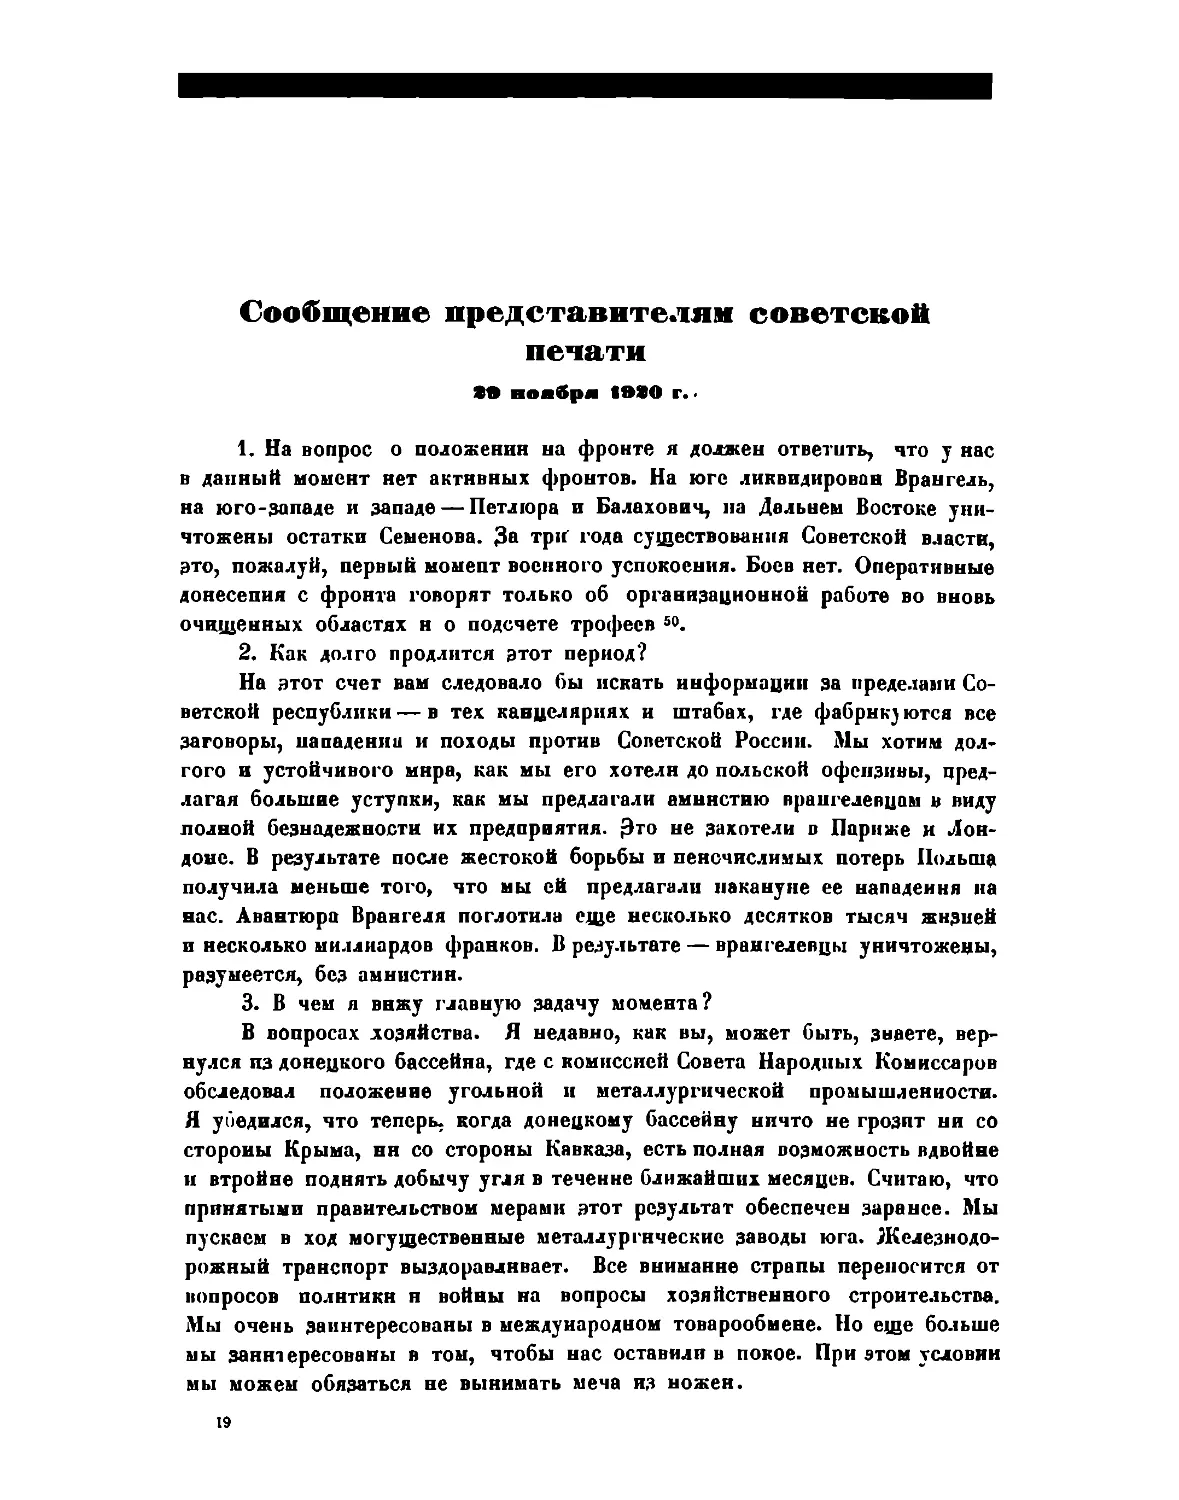 Сообщение представителям советской печати 29 ноября 1920 г.